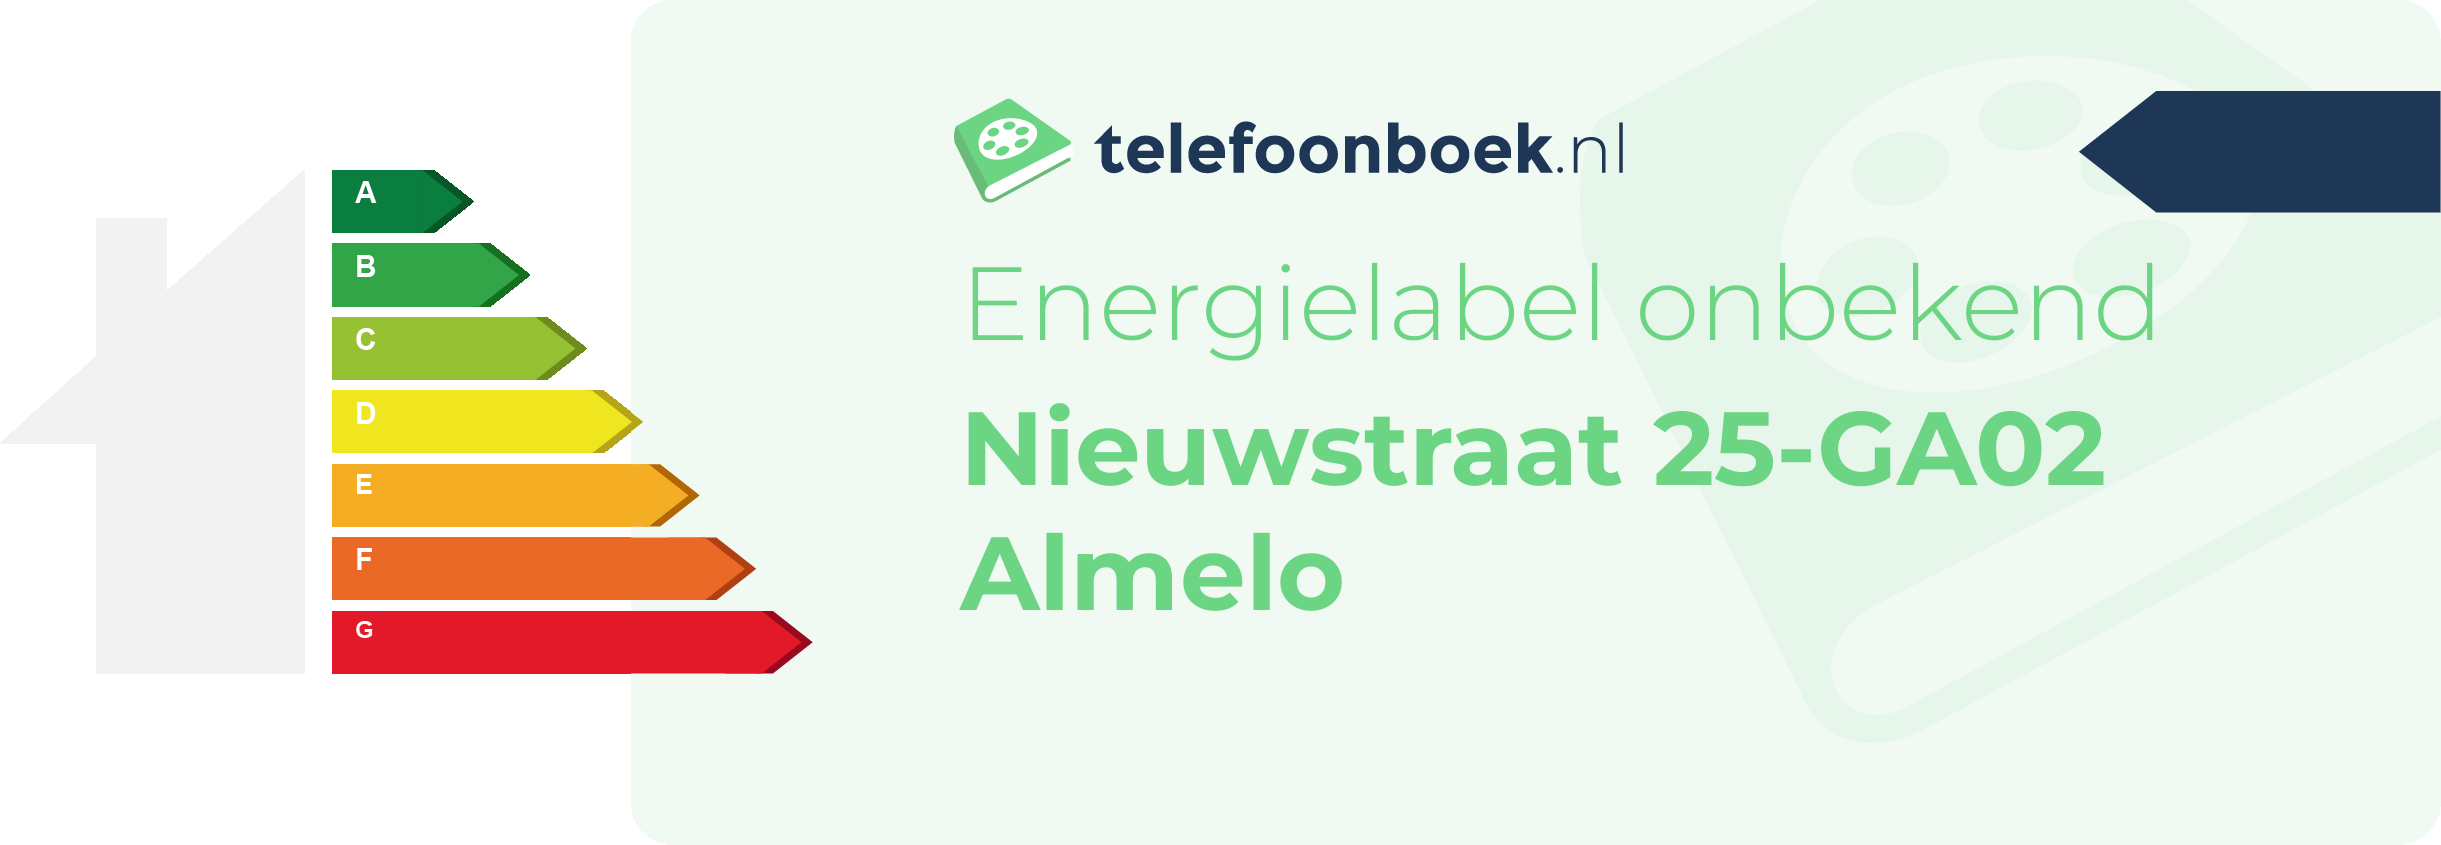 Energielabel Nieuwstraat 25-GA02 Almelo